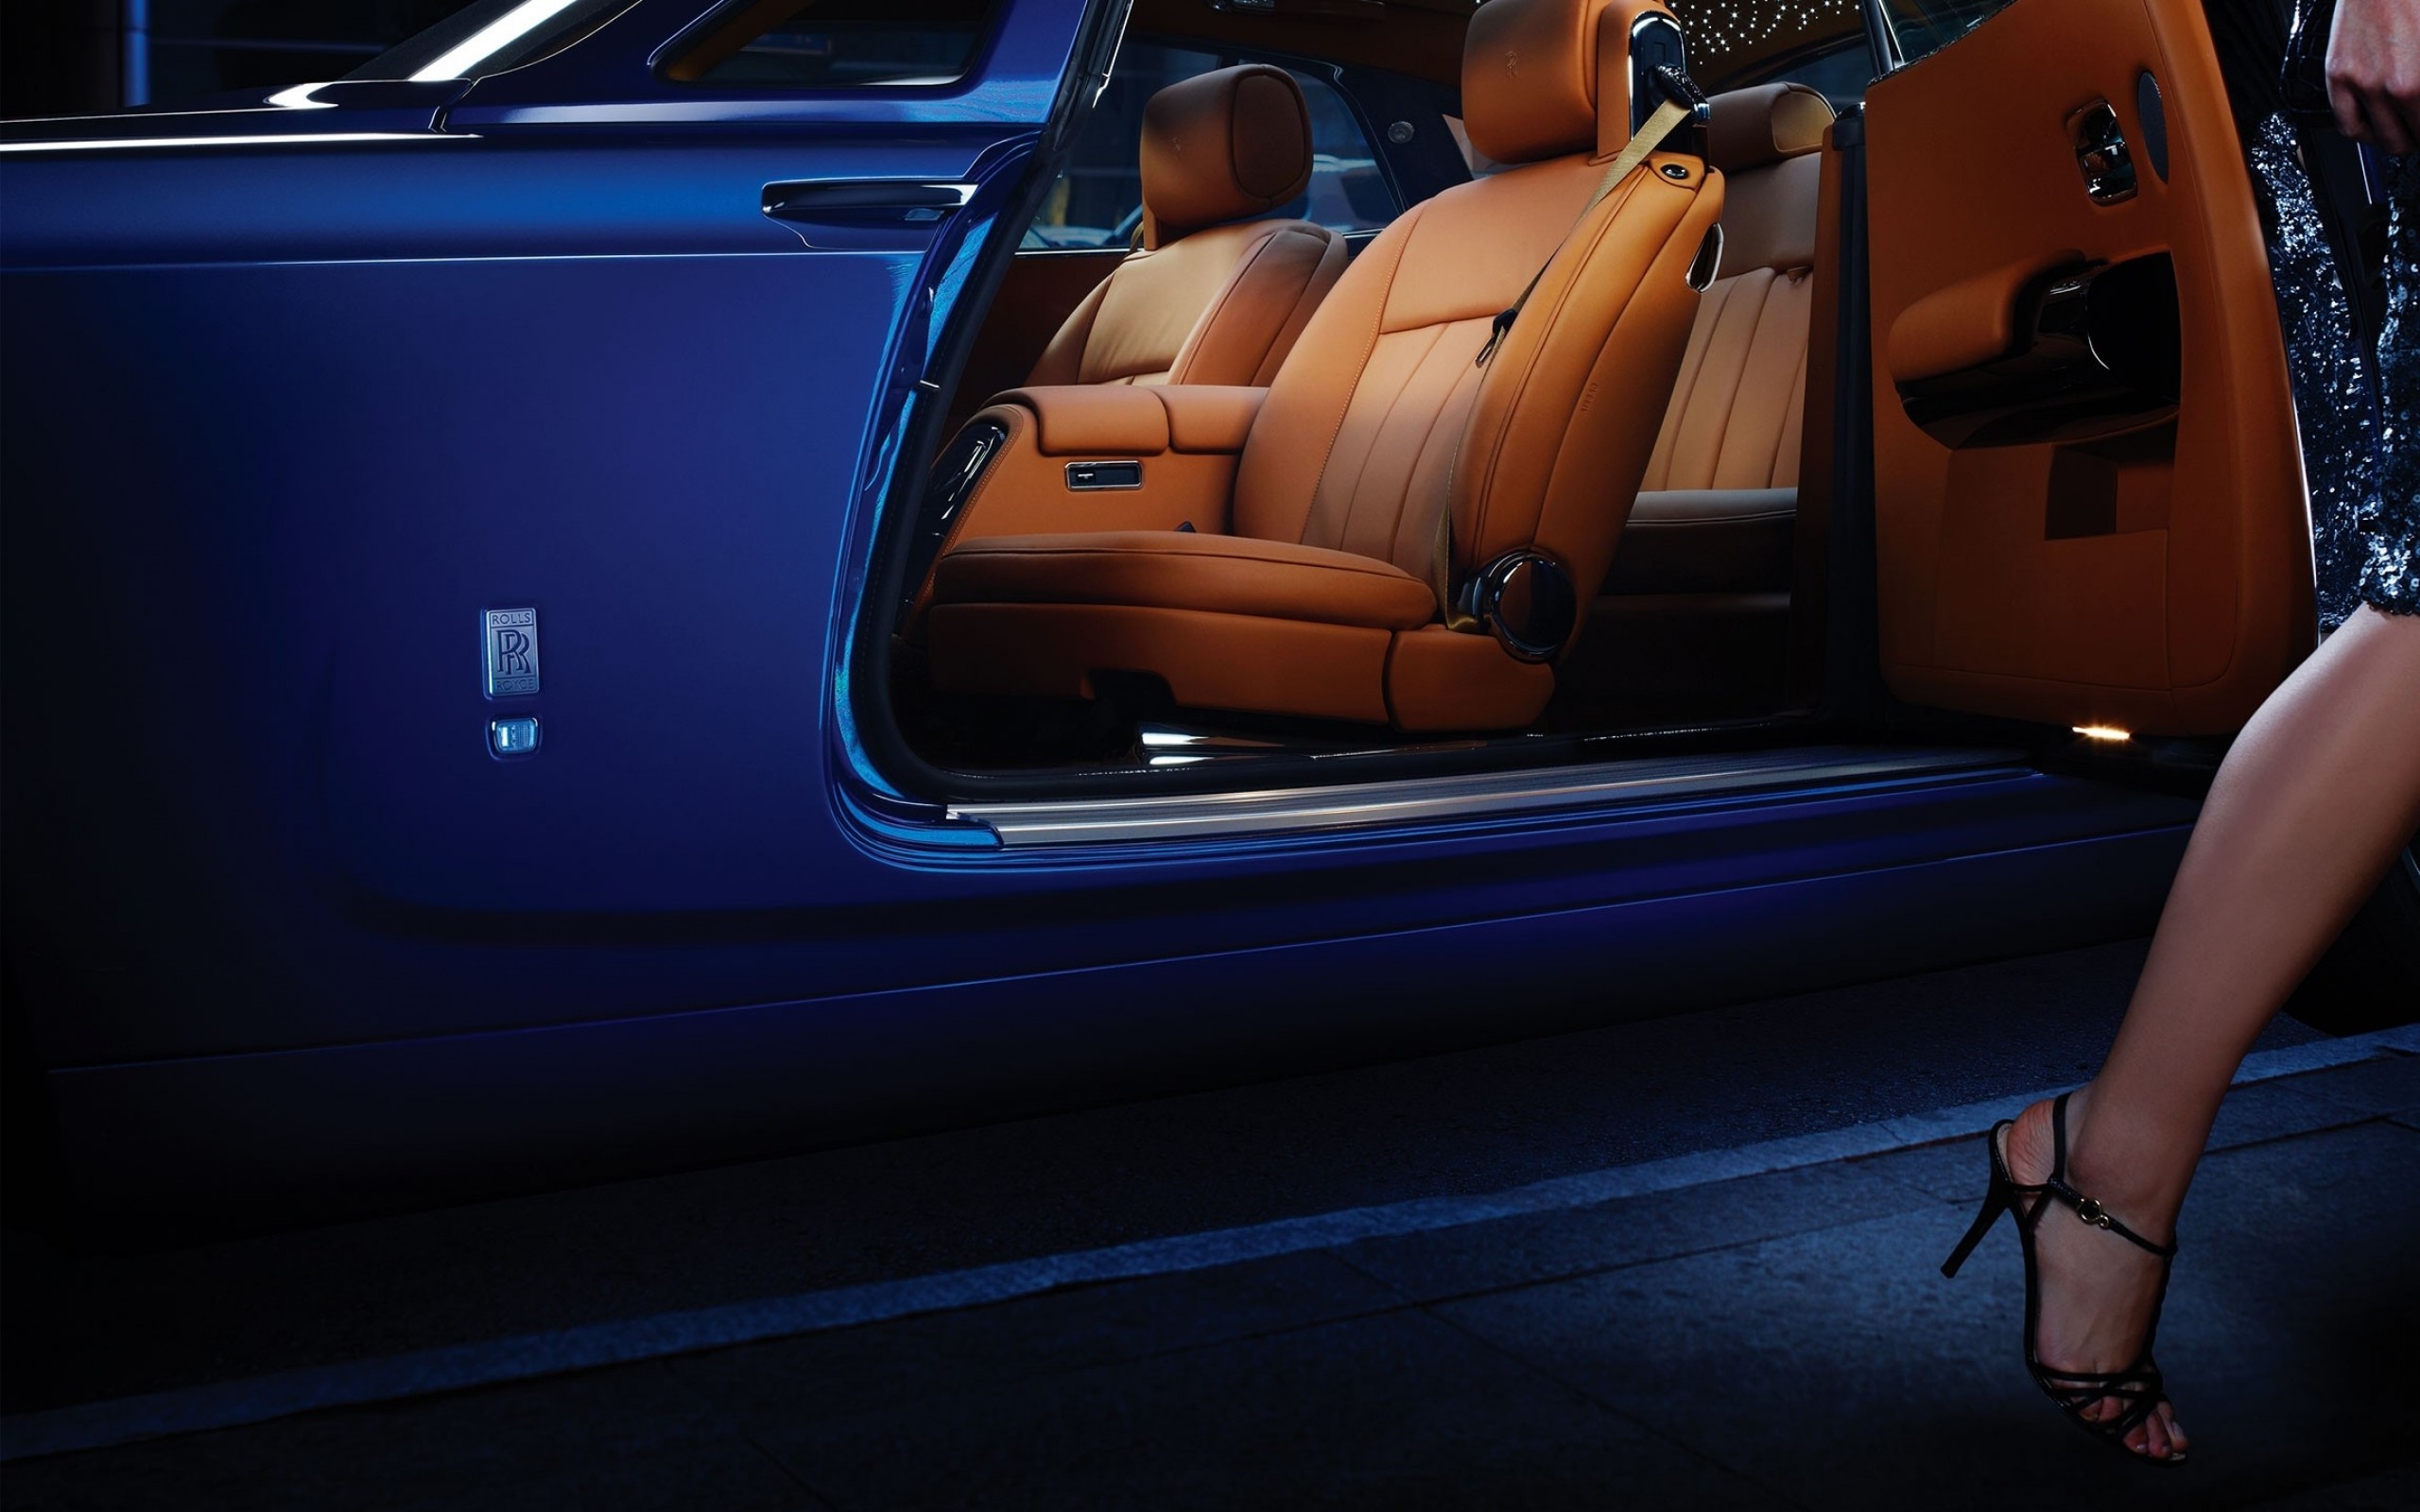 Descarga gratuita de fondo de pantalla para móvil de Rolls Royce, Vehículos.